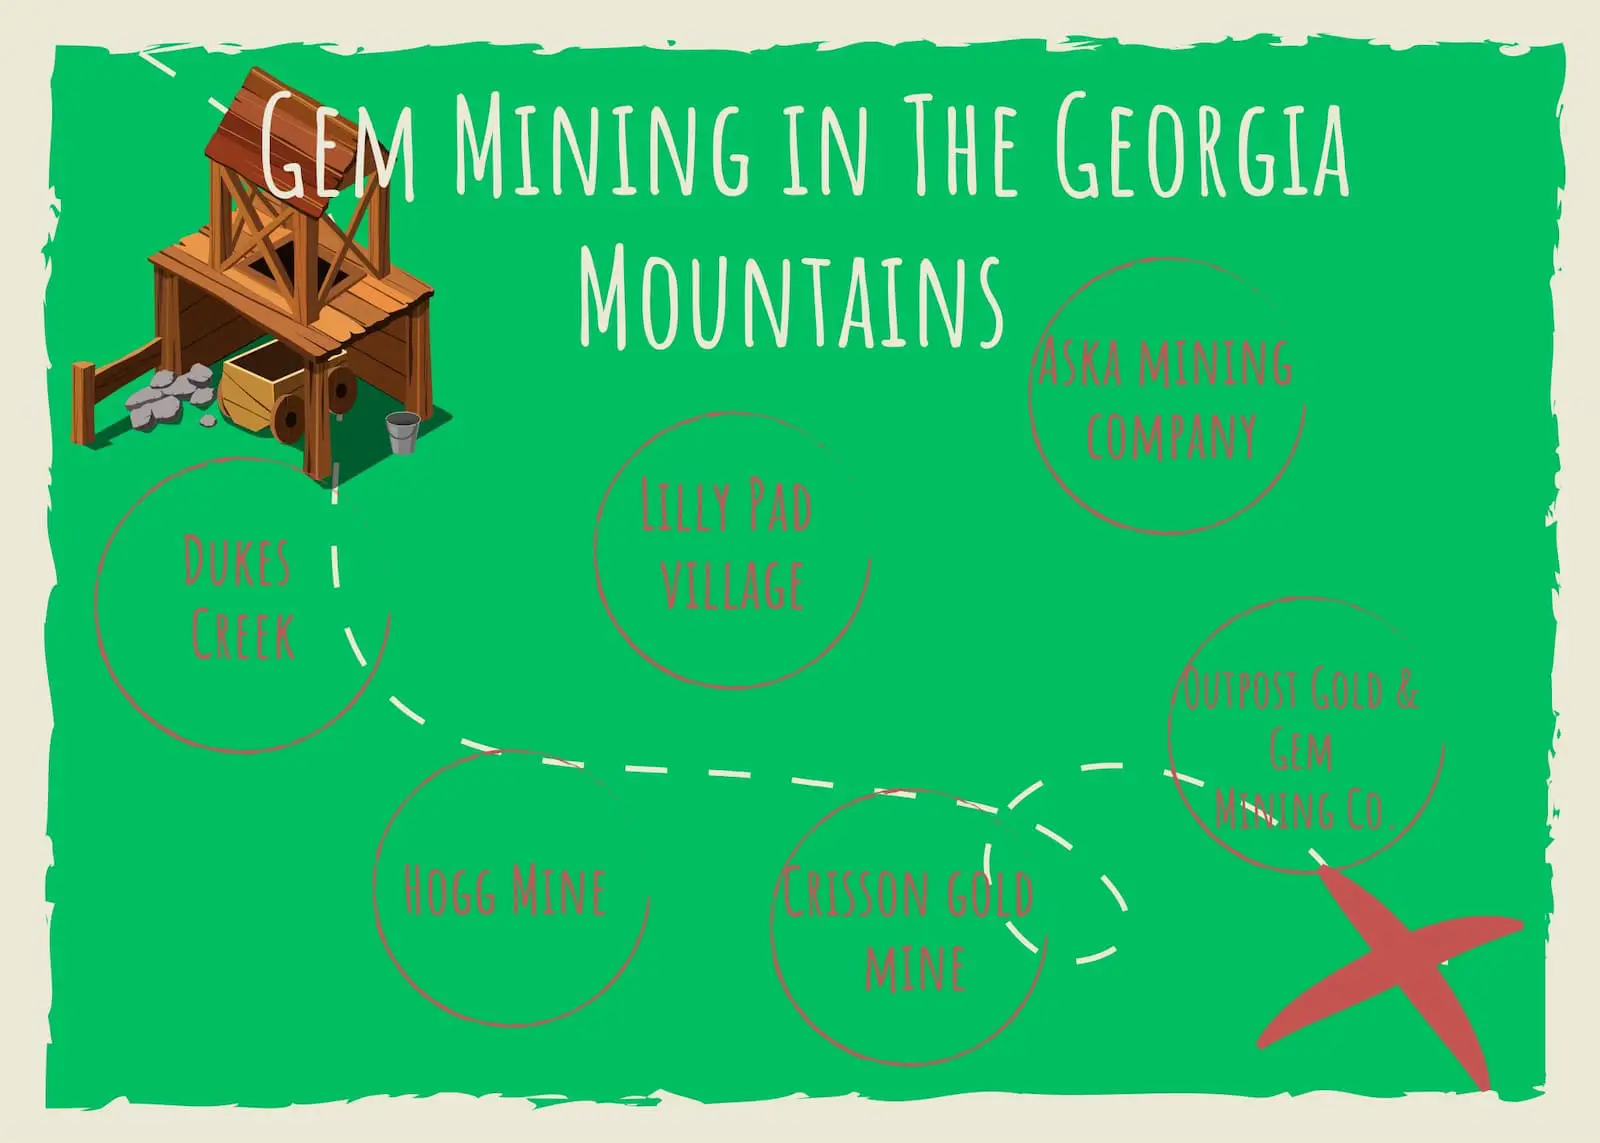 Gem Mining in Georgia Mountains